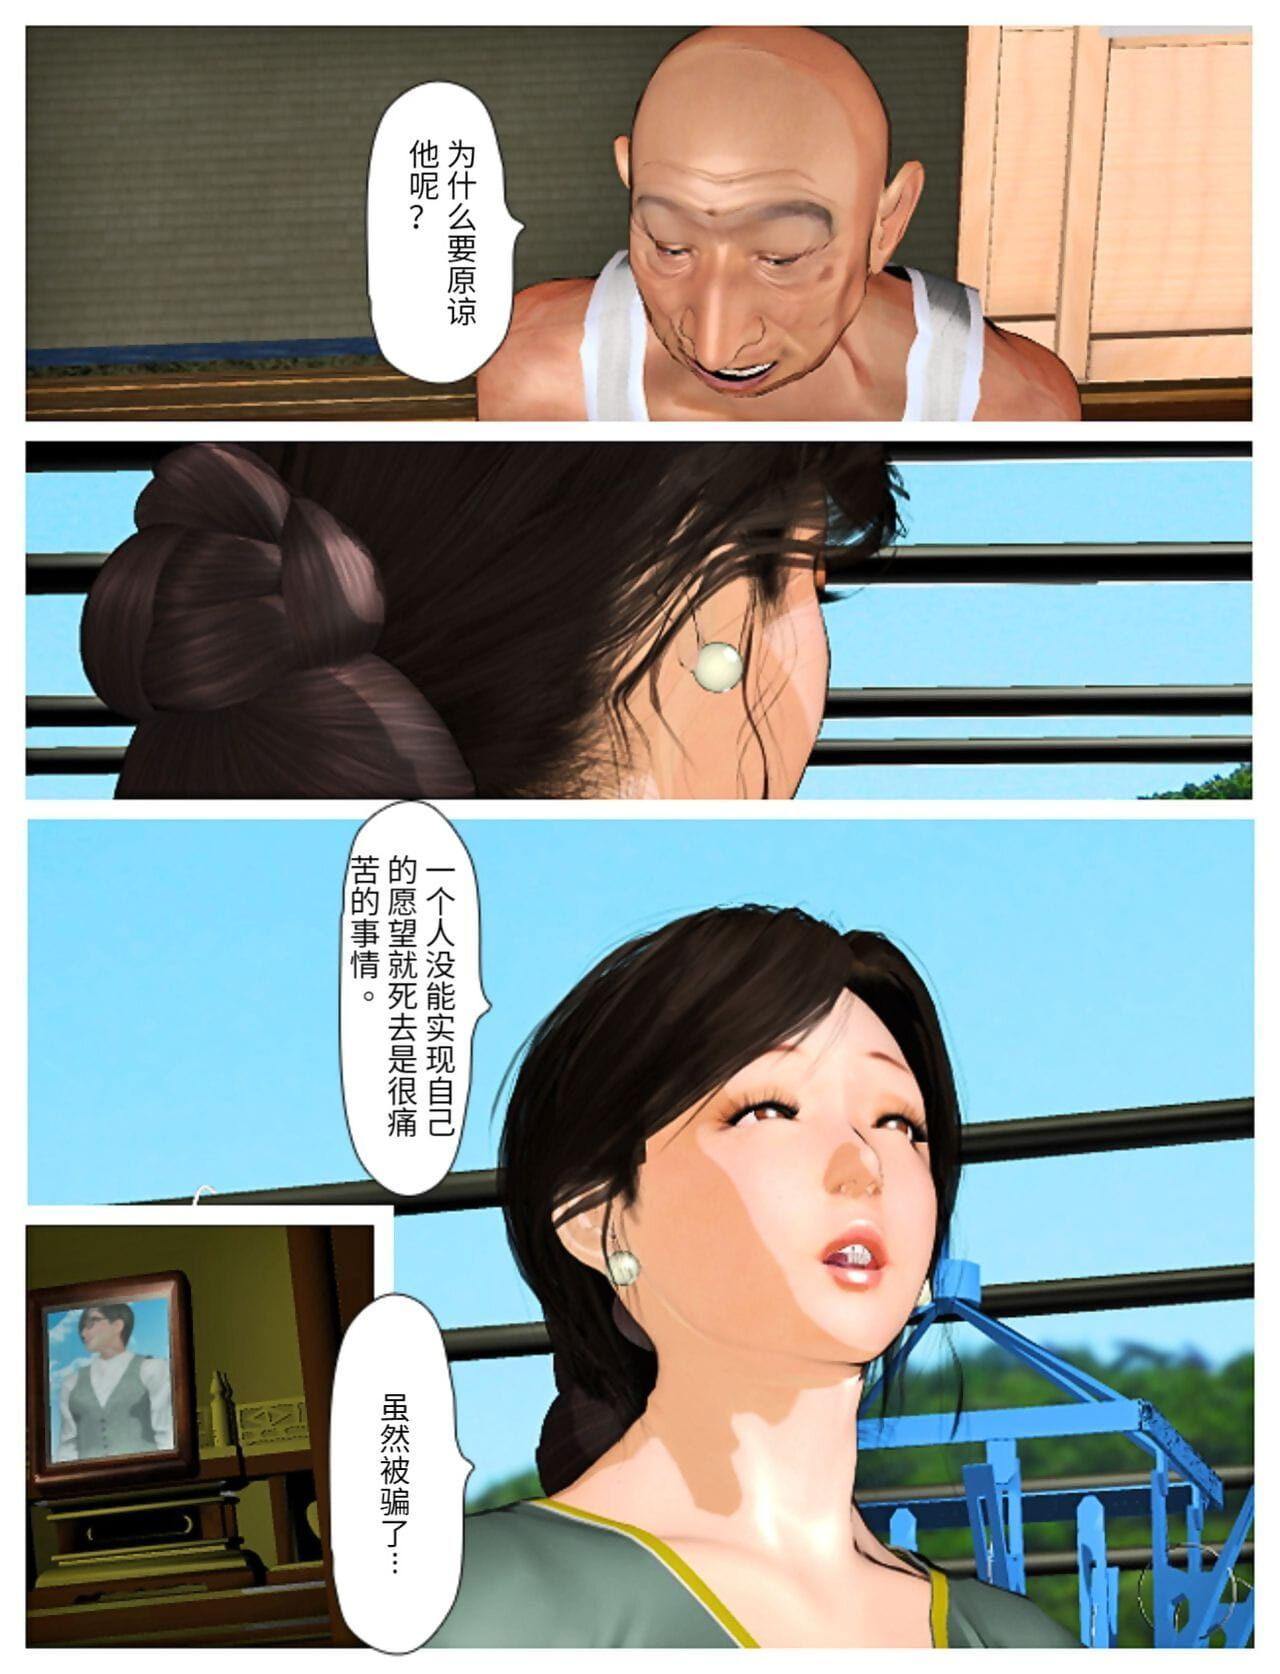 Kyou pas de misako san 2019:4 PARTIE 5 page 1